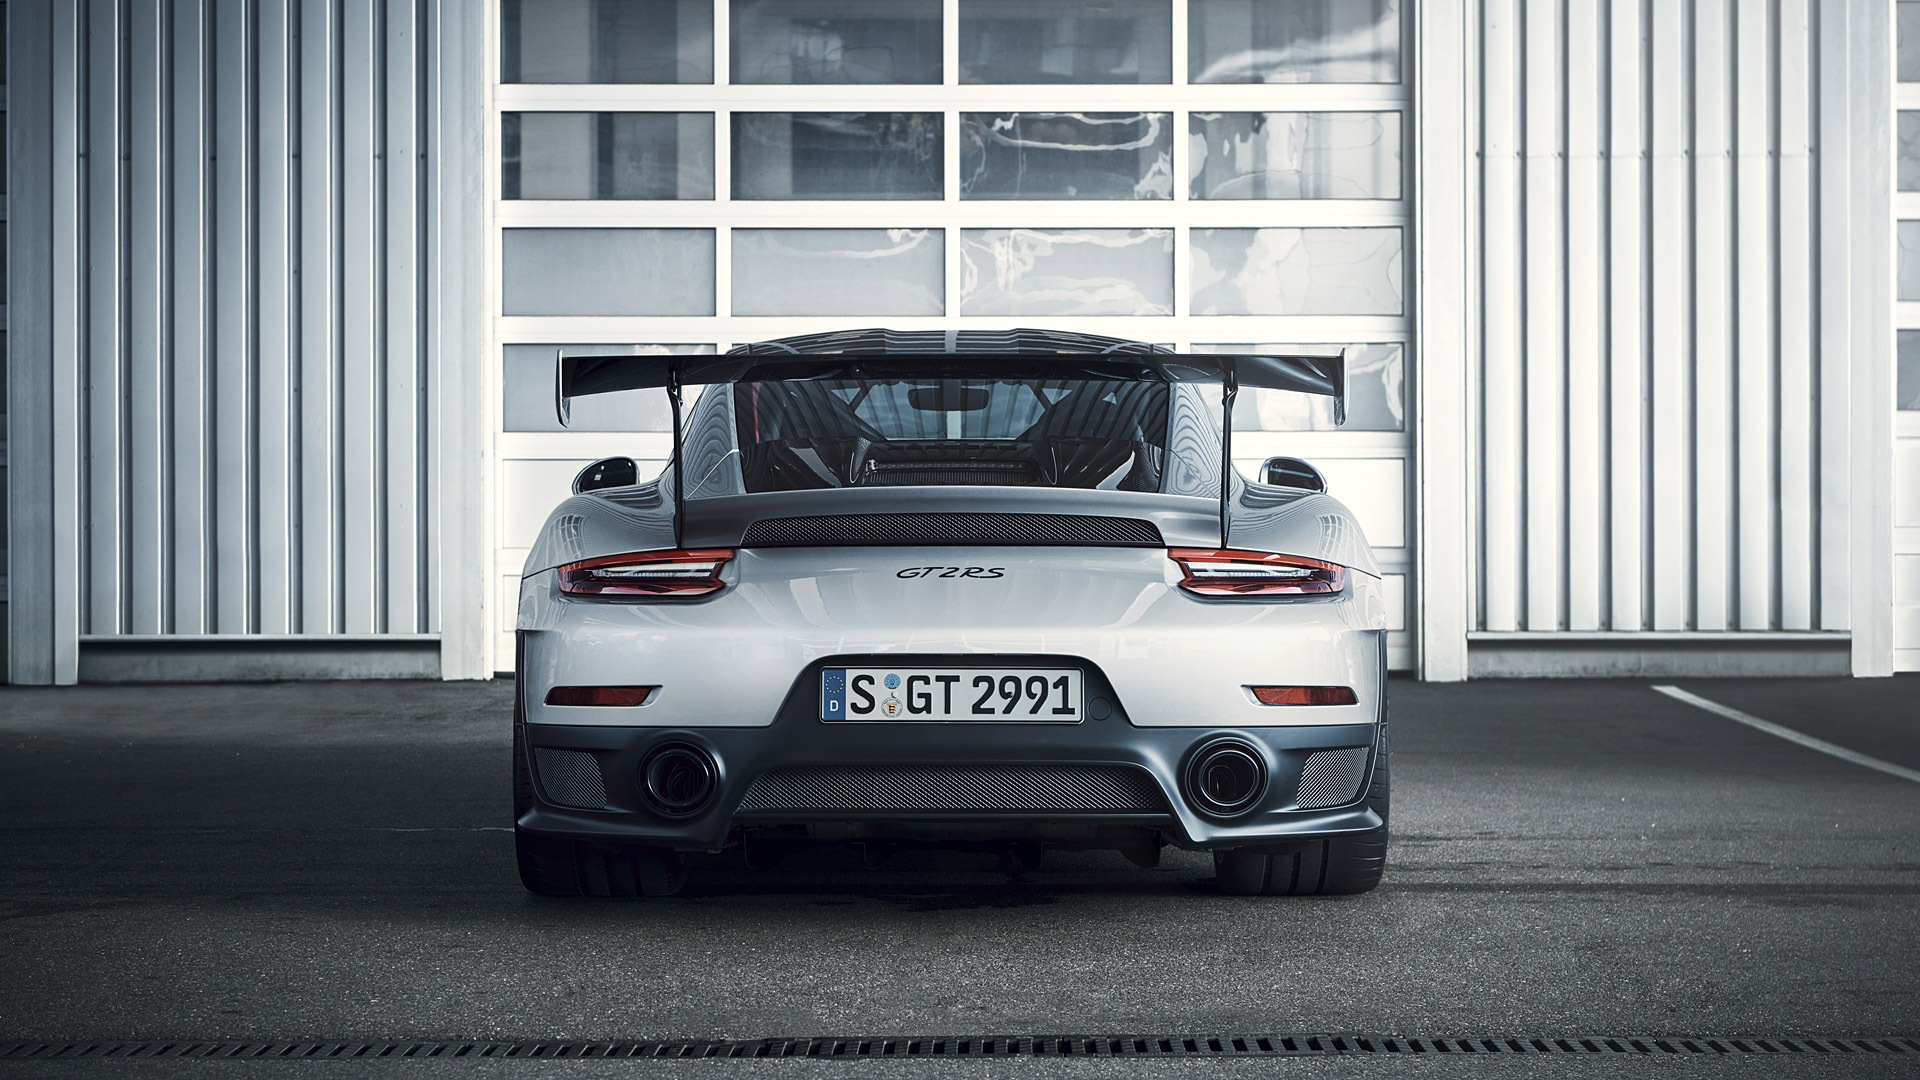 Porsche 911 Gt2 Rs Back - HD Wallpaper 